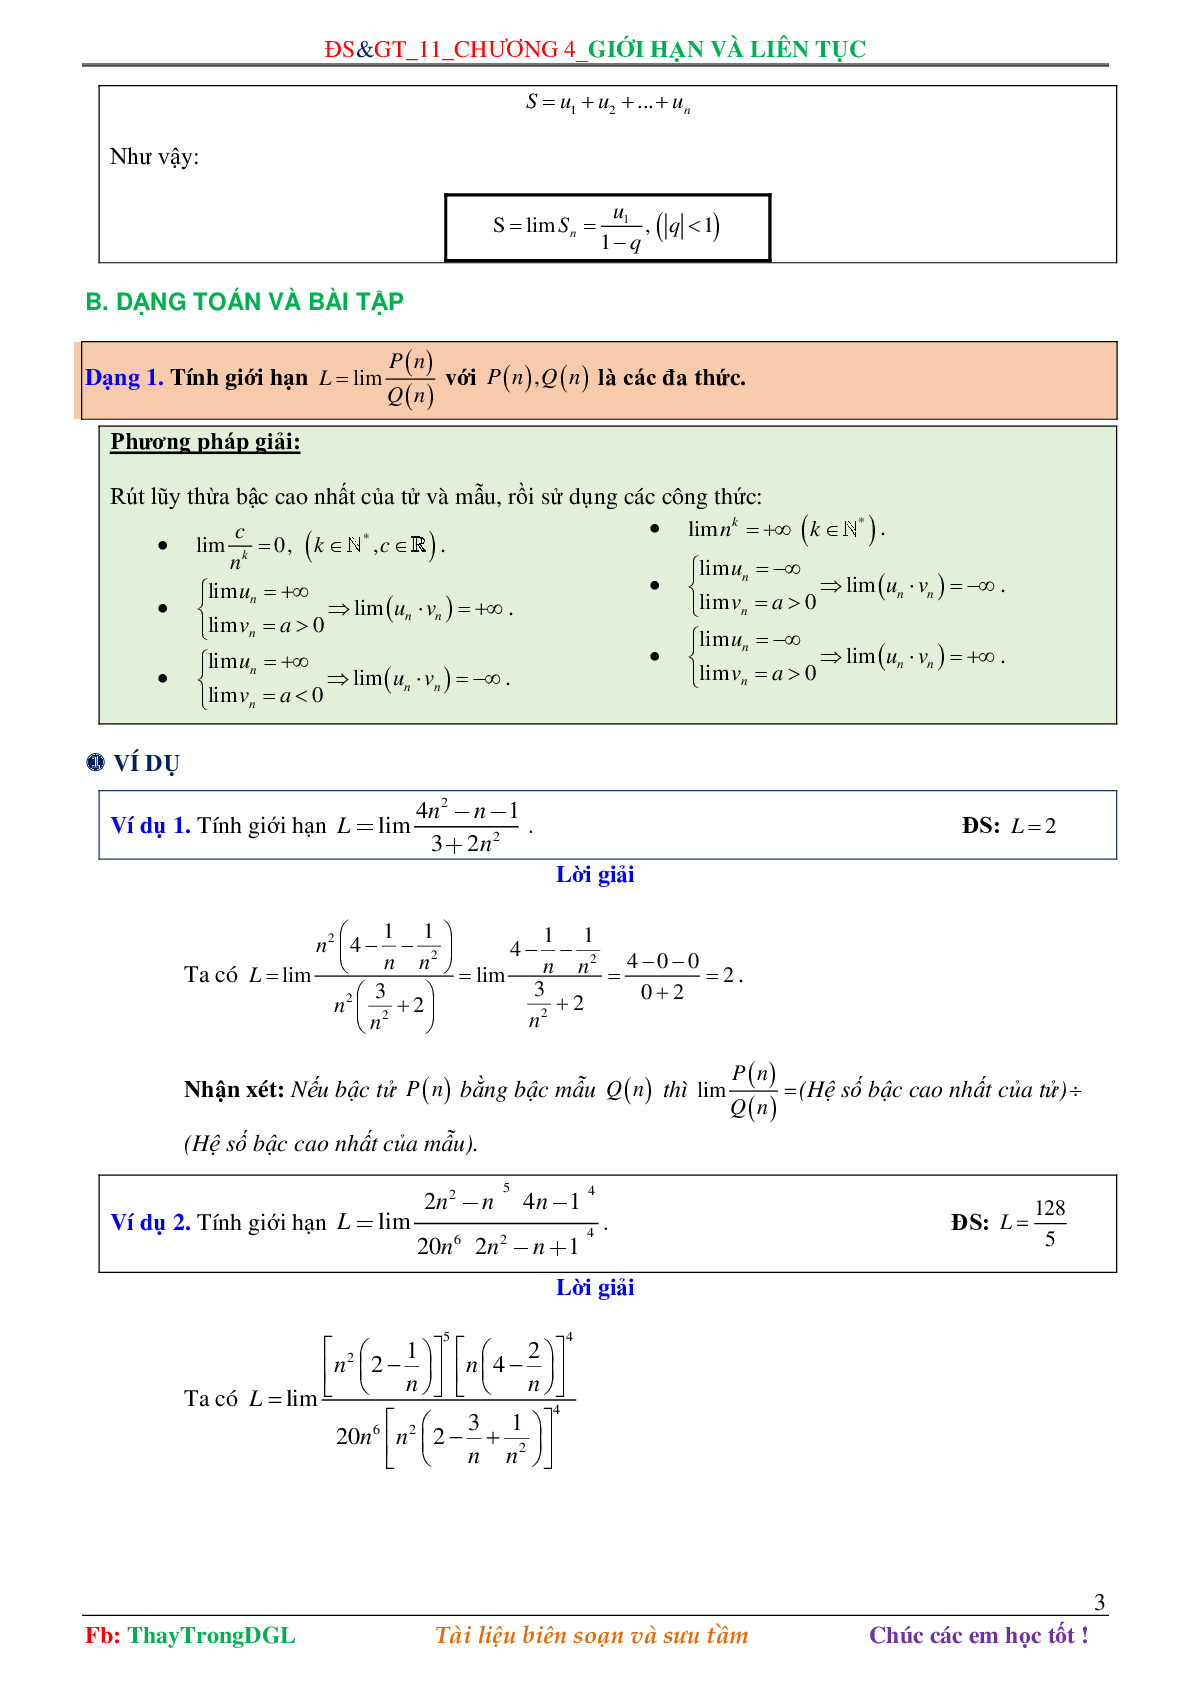 Các dạng toán về Giới hạn và liên tục (có bài tập kèm theo) (trang 3)